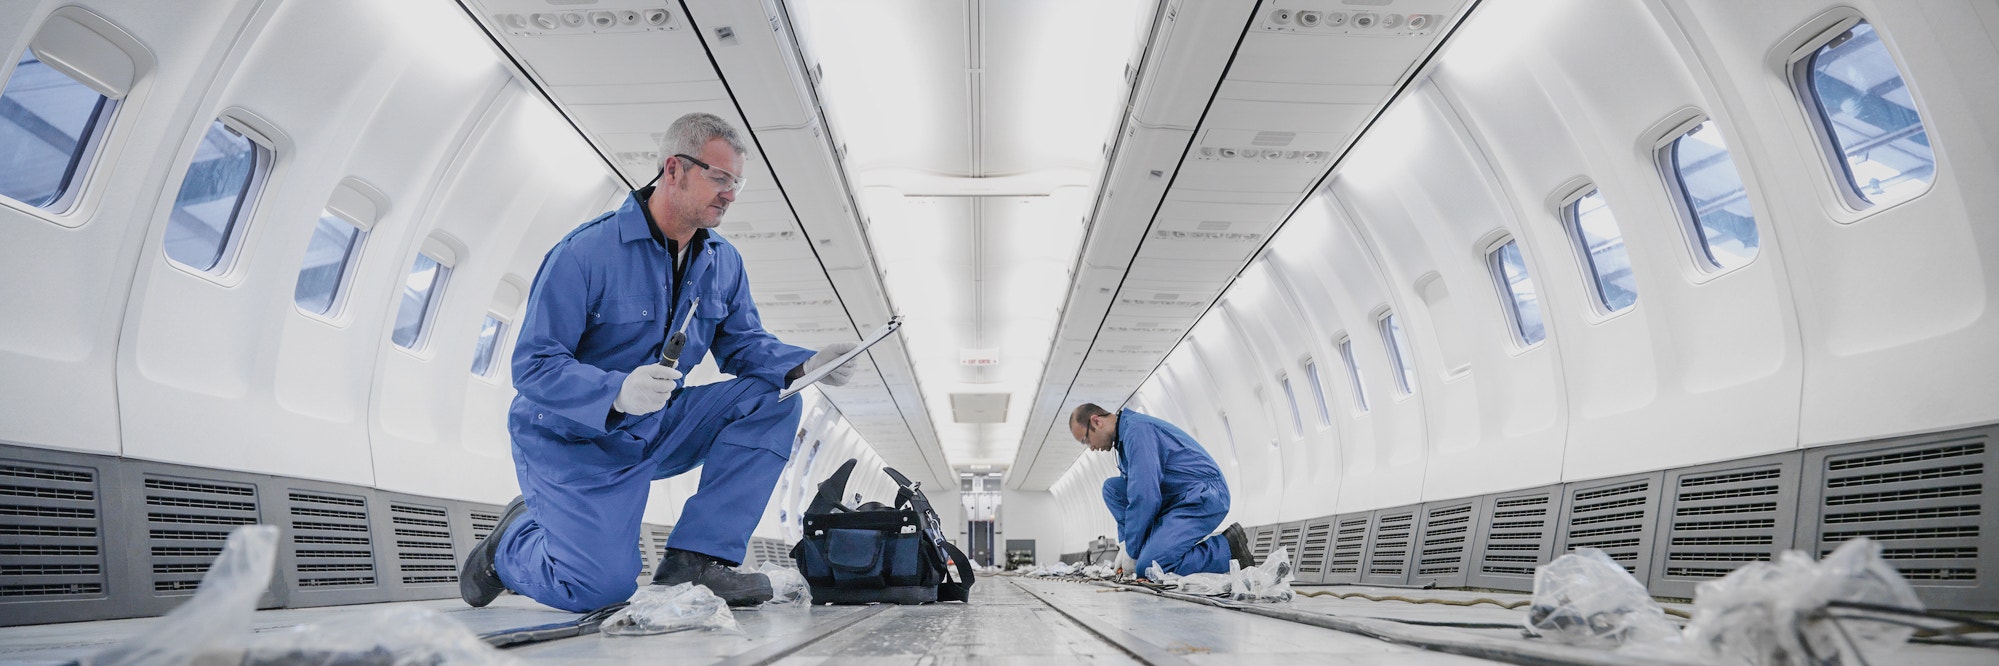 Flugzeugingenieure bei der Arbeit an der Innenausstattung eines 737-Jets